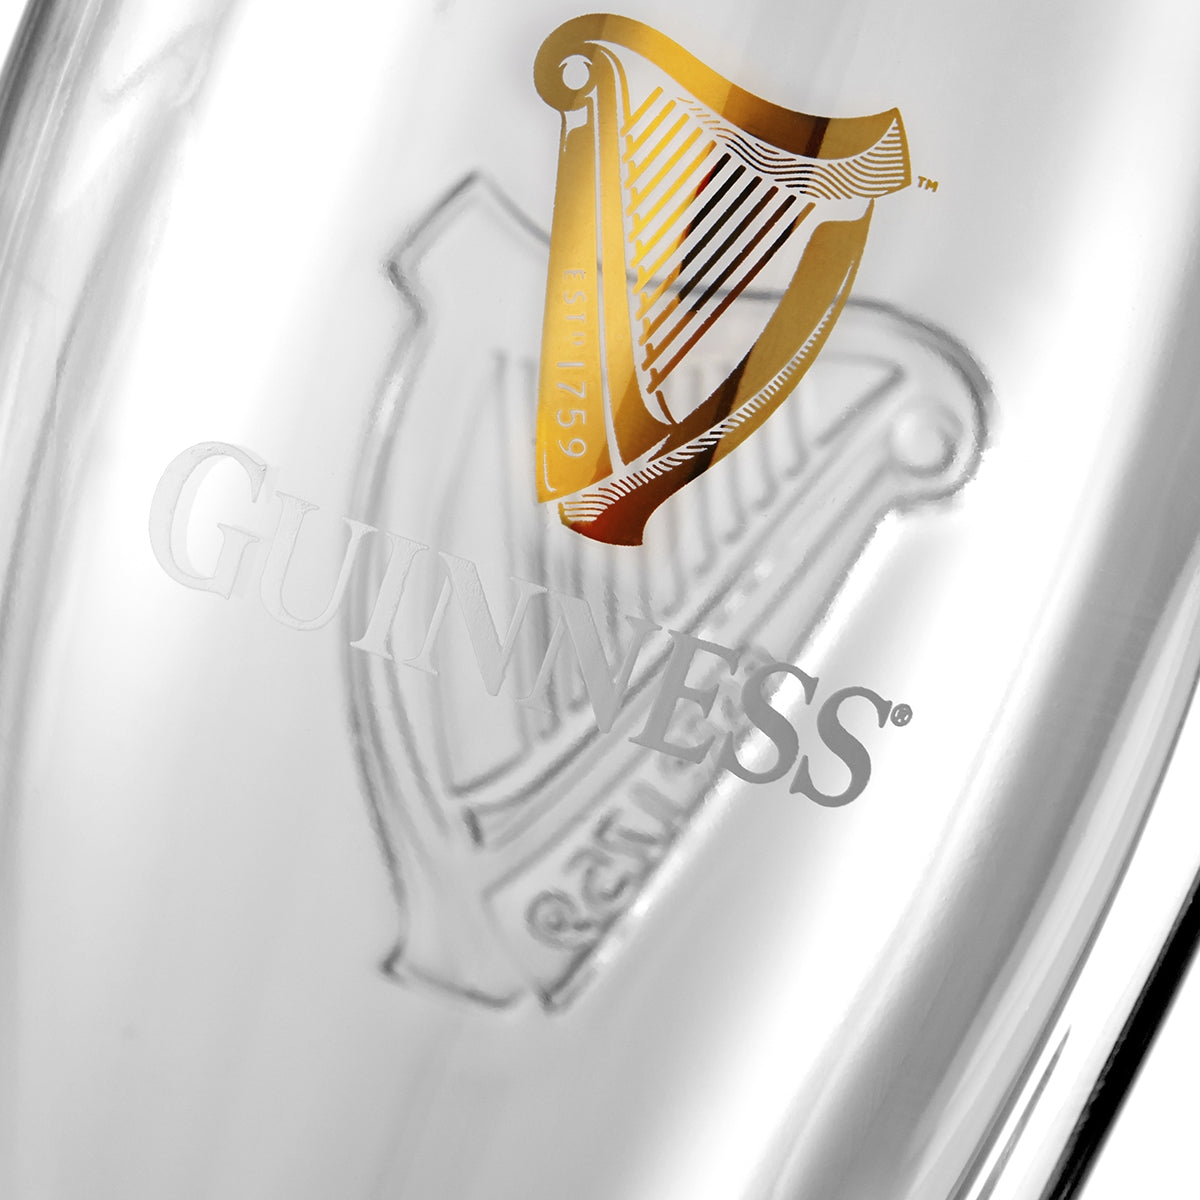 Guinness Pint Glass - 4 Pack